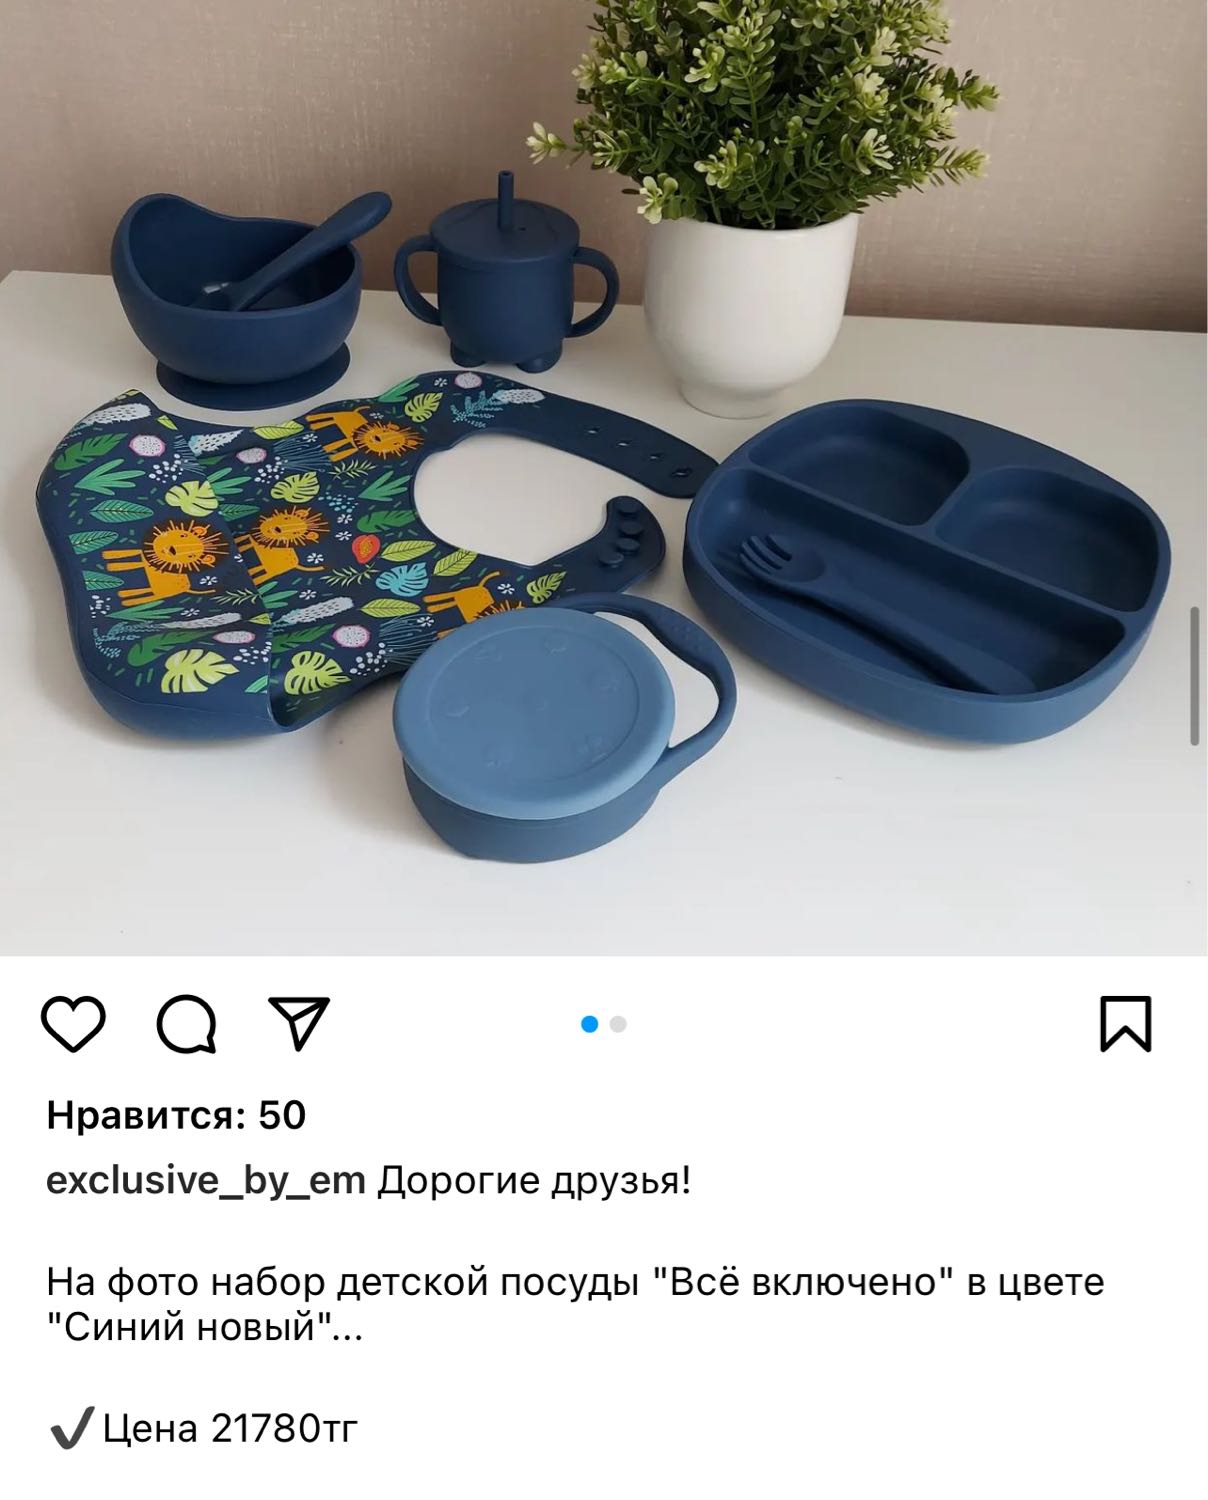 Доброй ночи девочки) какую посуды лучше покупать для ребёнка чтобы дол... image №2